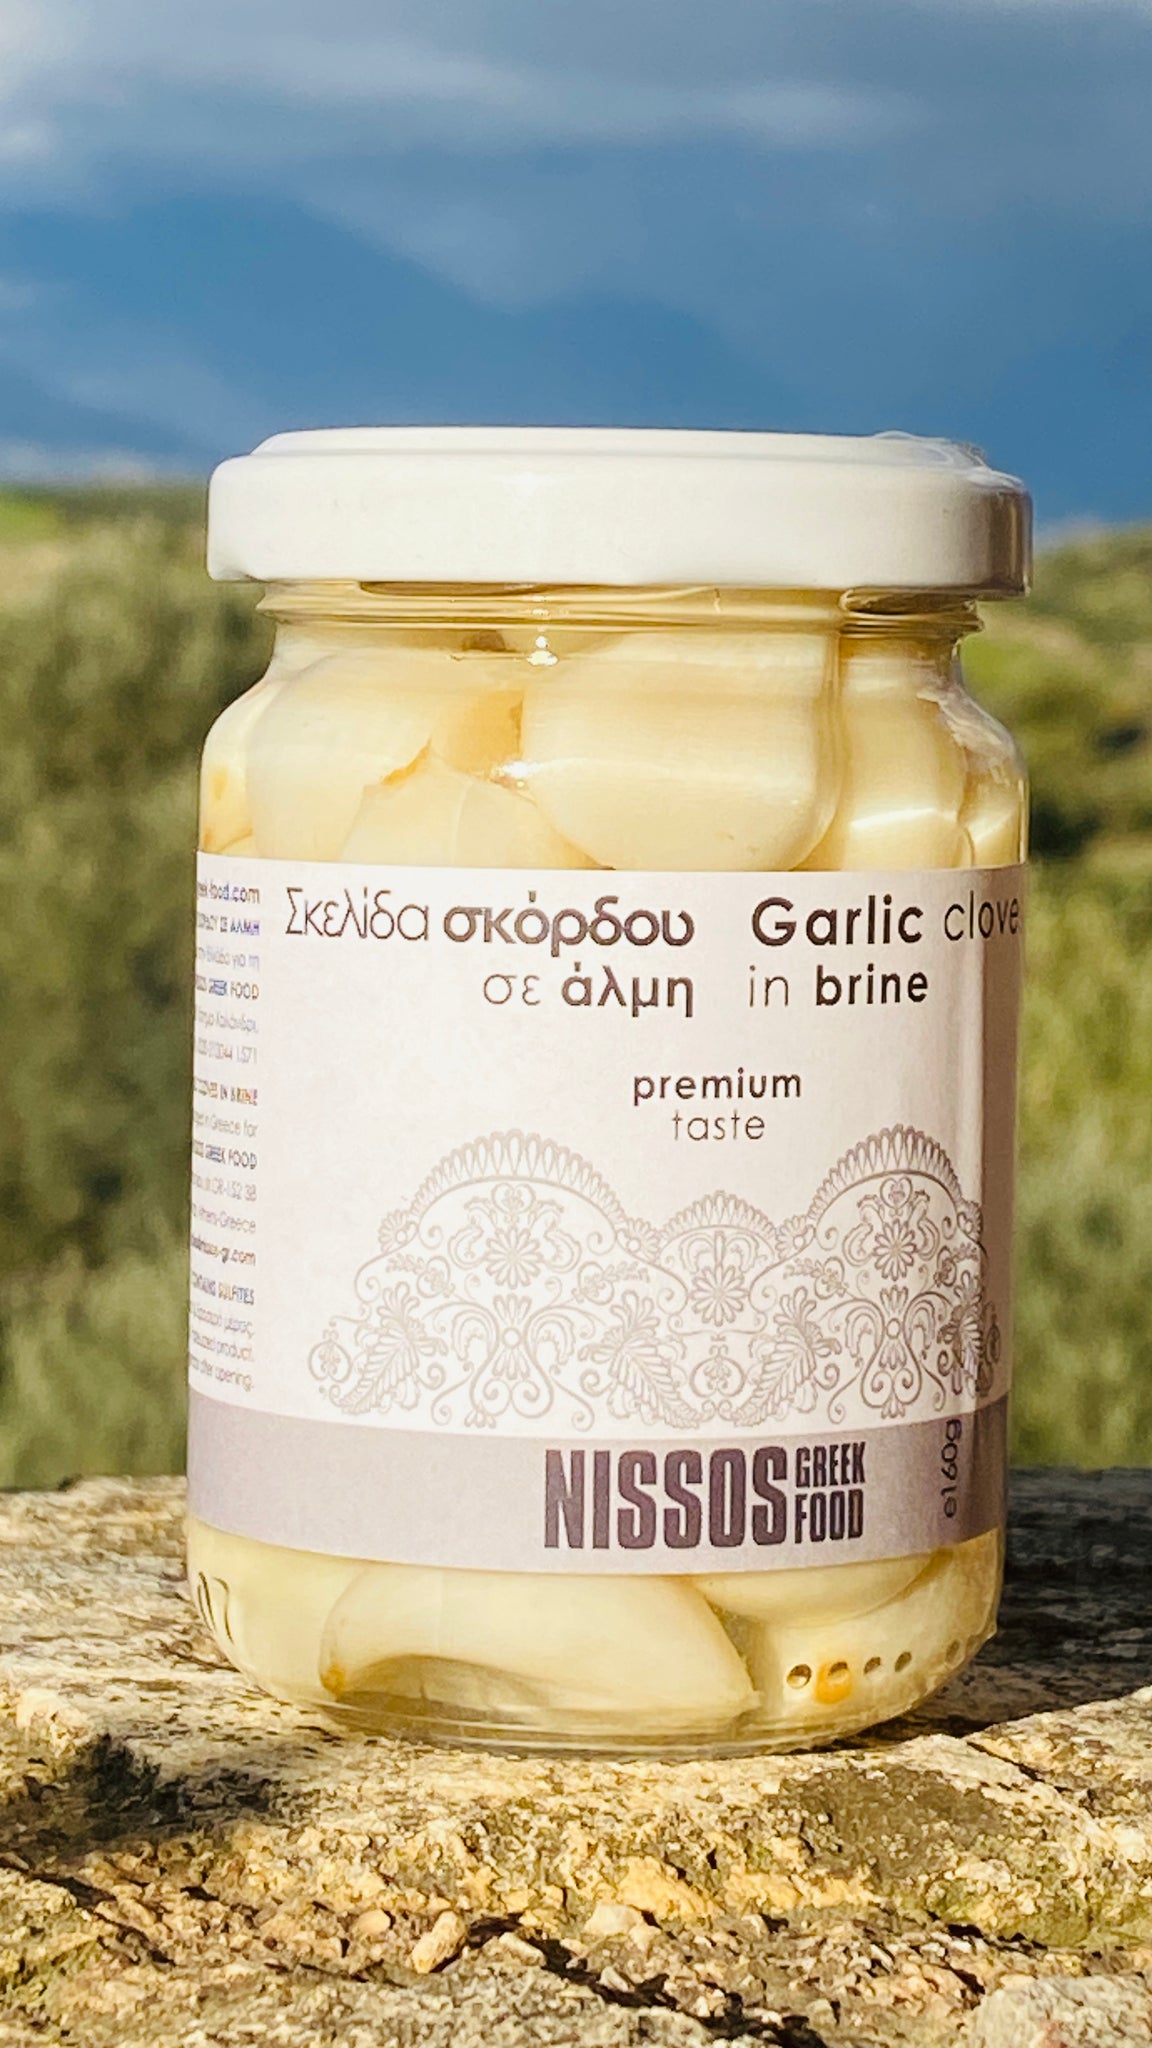 Greek Garlic in brine